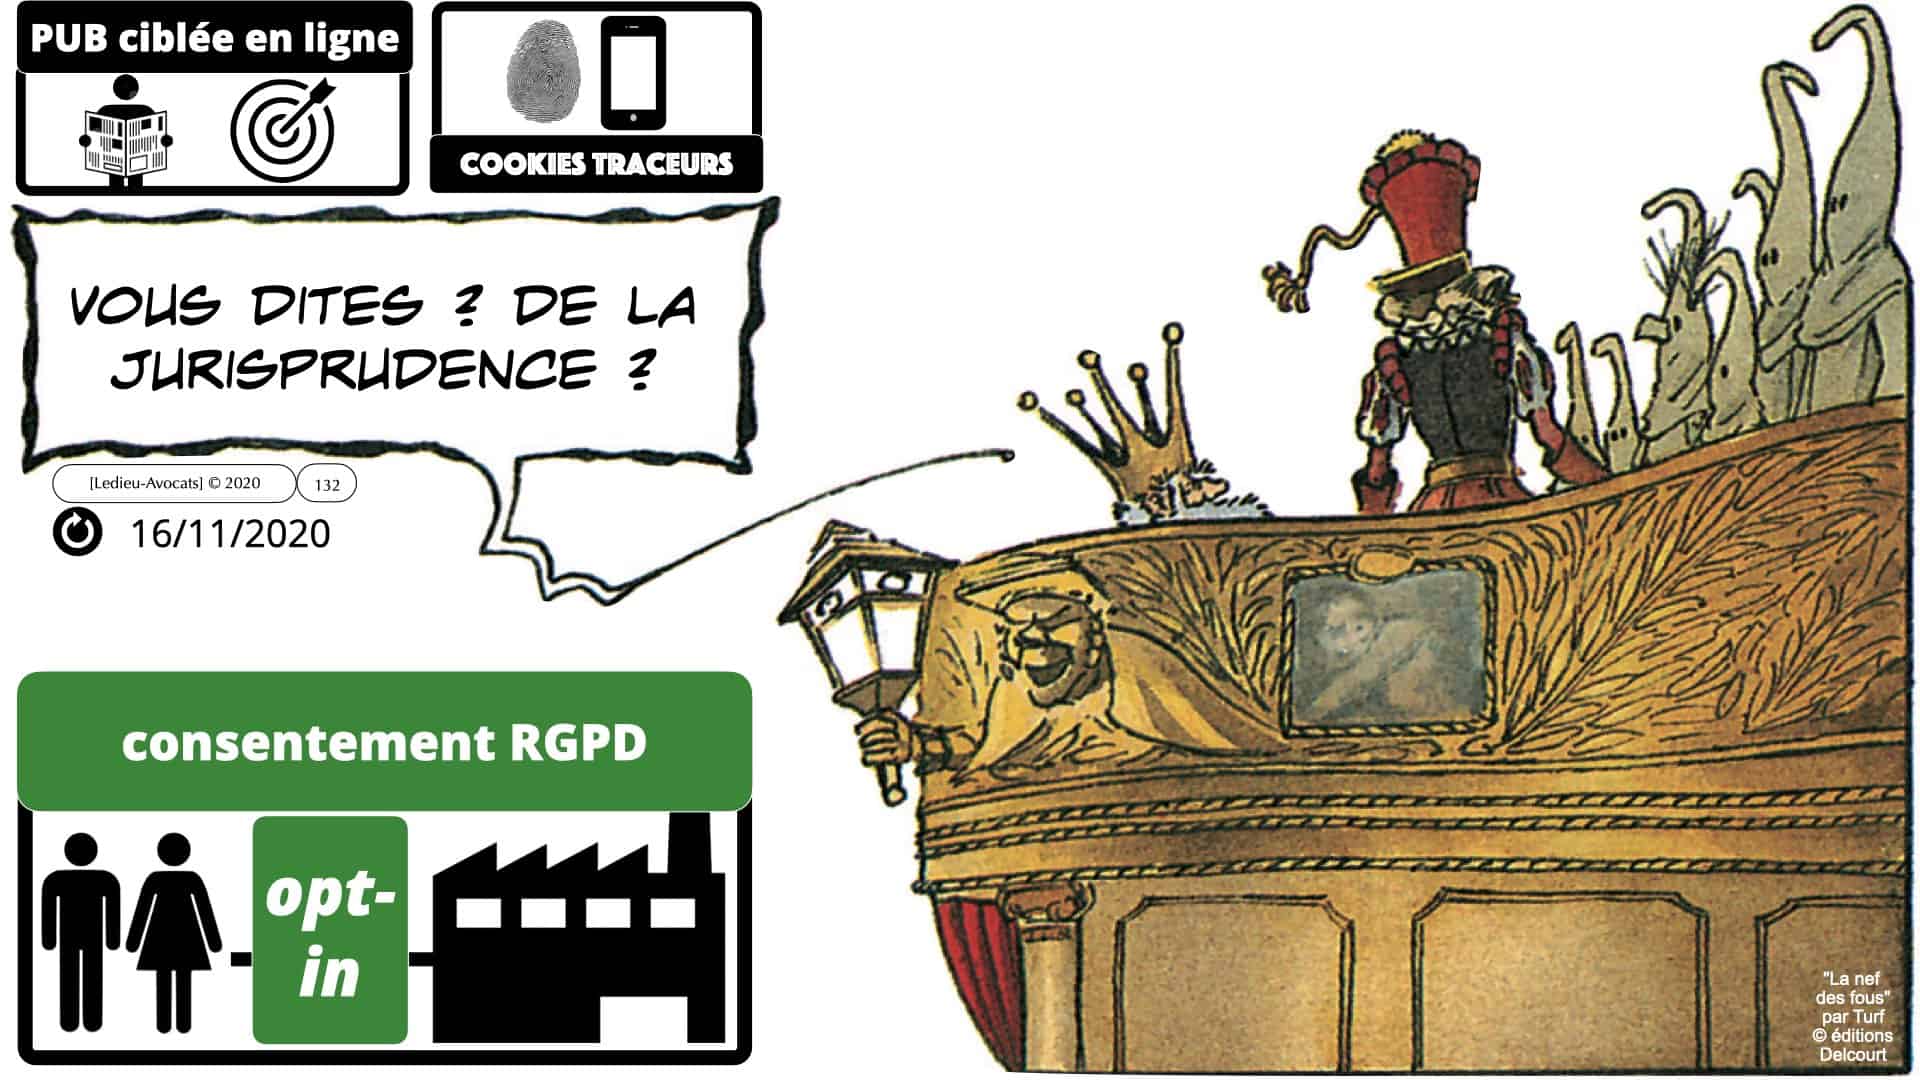 RGPD e-Privacy données personnelles jurisprudence formation Lamy Les Echos 10-02-2021 ©Ledieu-Avocats.132